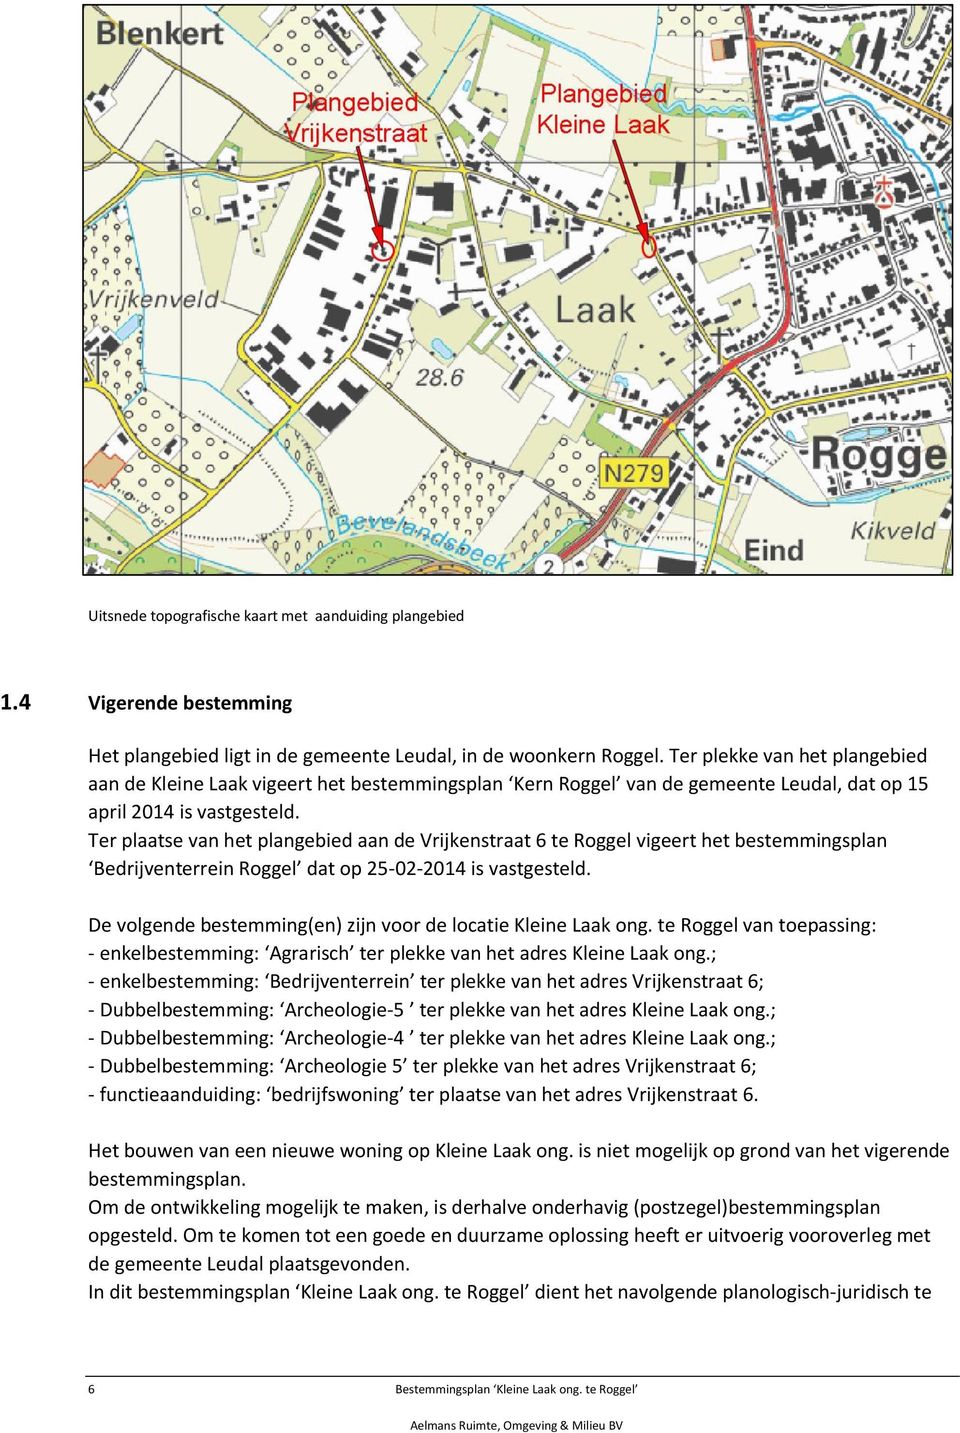 Ter plaatse van het plangebied aan de Vrijkenstraat 6 te Roggel vigeert het bestemmingsplan Bedrijventerrein Roggel dat op 25-02-2014 is vastgesteld.